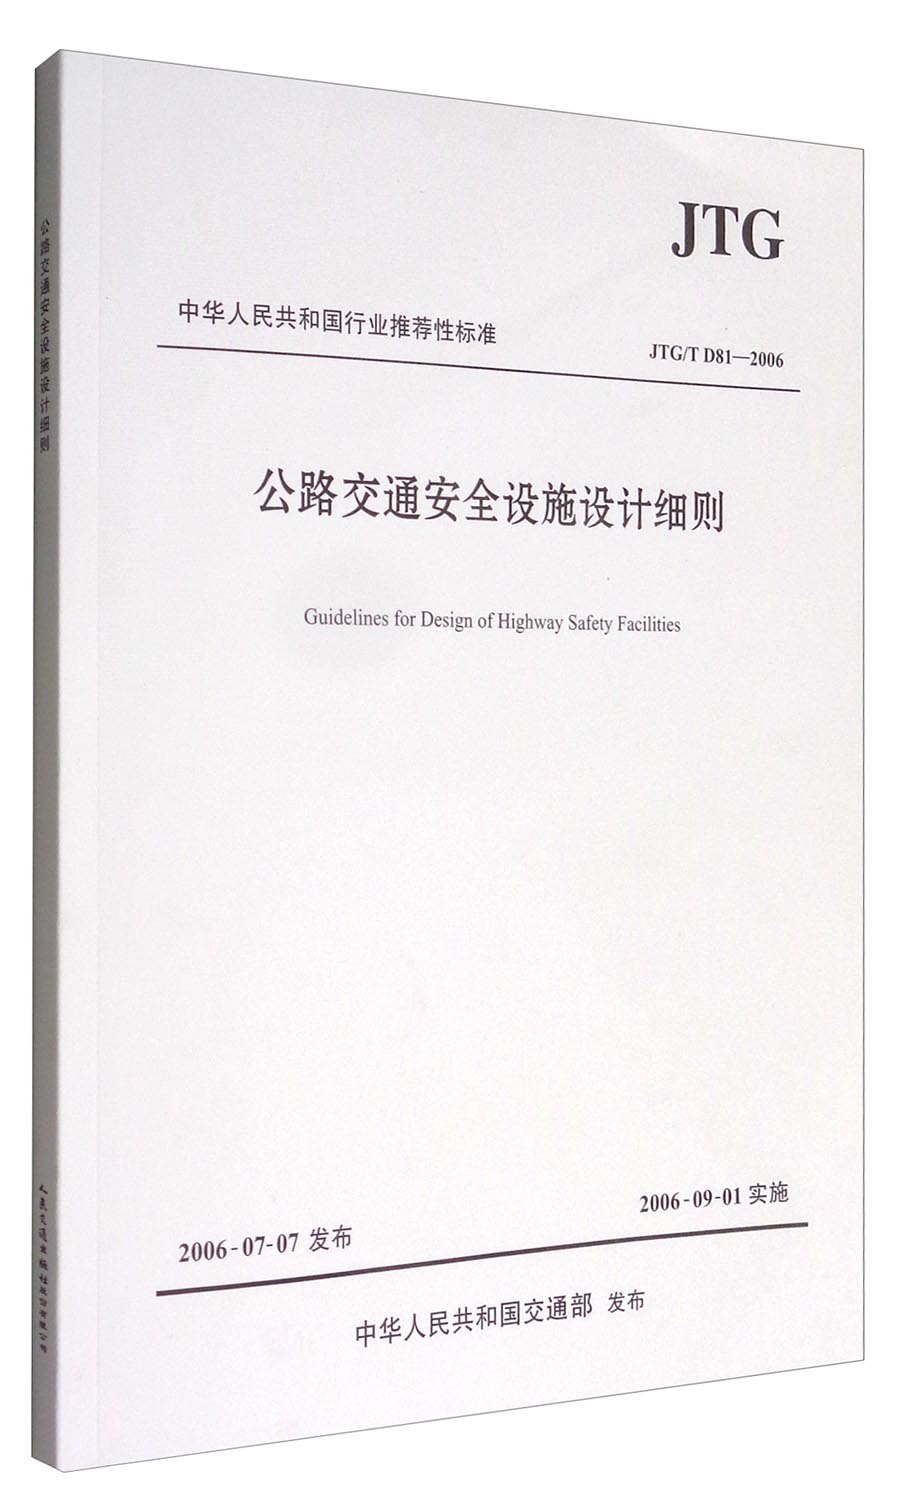 中华人民共和国行业推荐性标准（JTG/T D81-2006）：公路交通安全设施设计细则 mobi格式下载